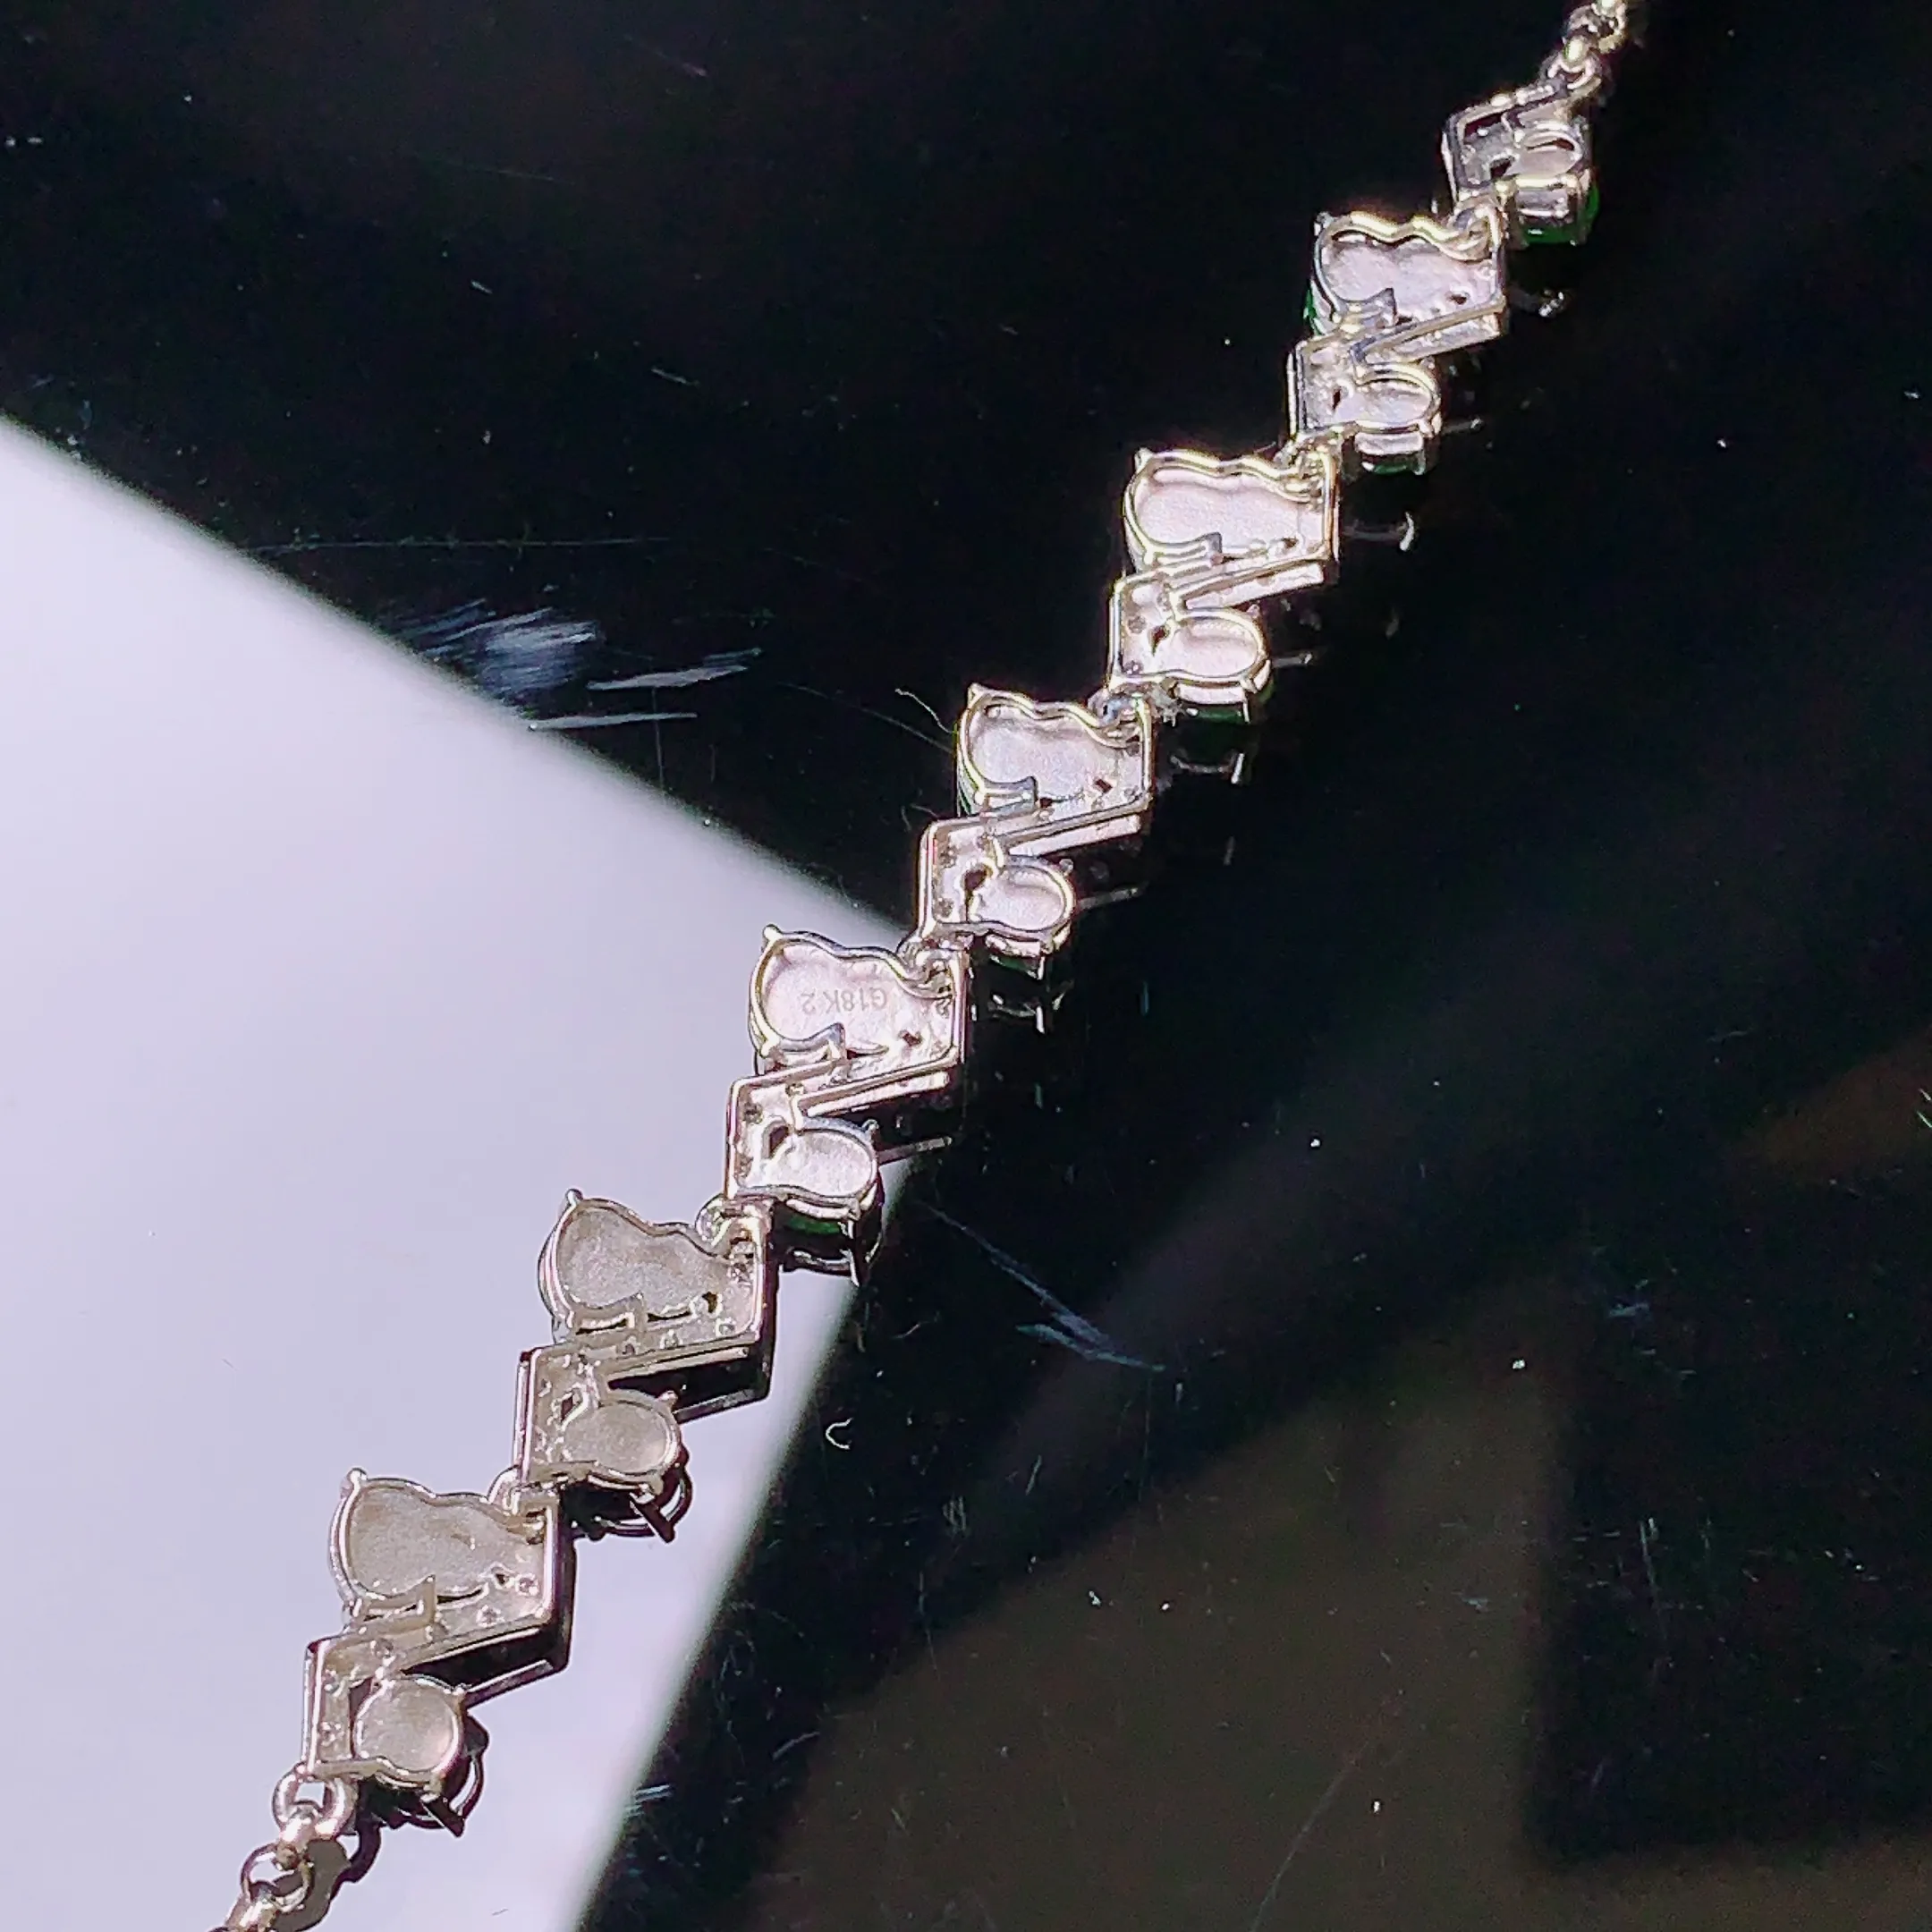 18k金钻镶嵌葫芦手链 玉质细腻 水润亮眼 色泽艳丽 款式新颖唯美 整体尺寸64.5*6.8*3.2